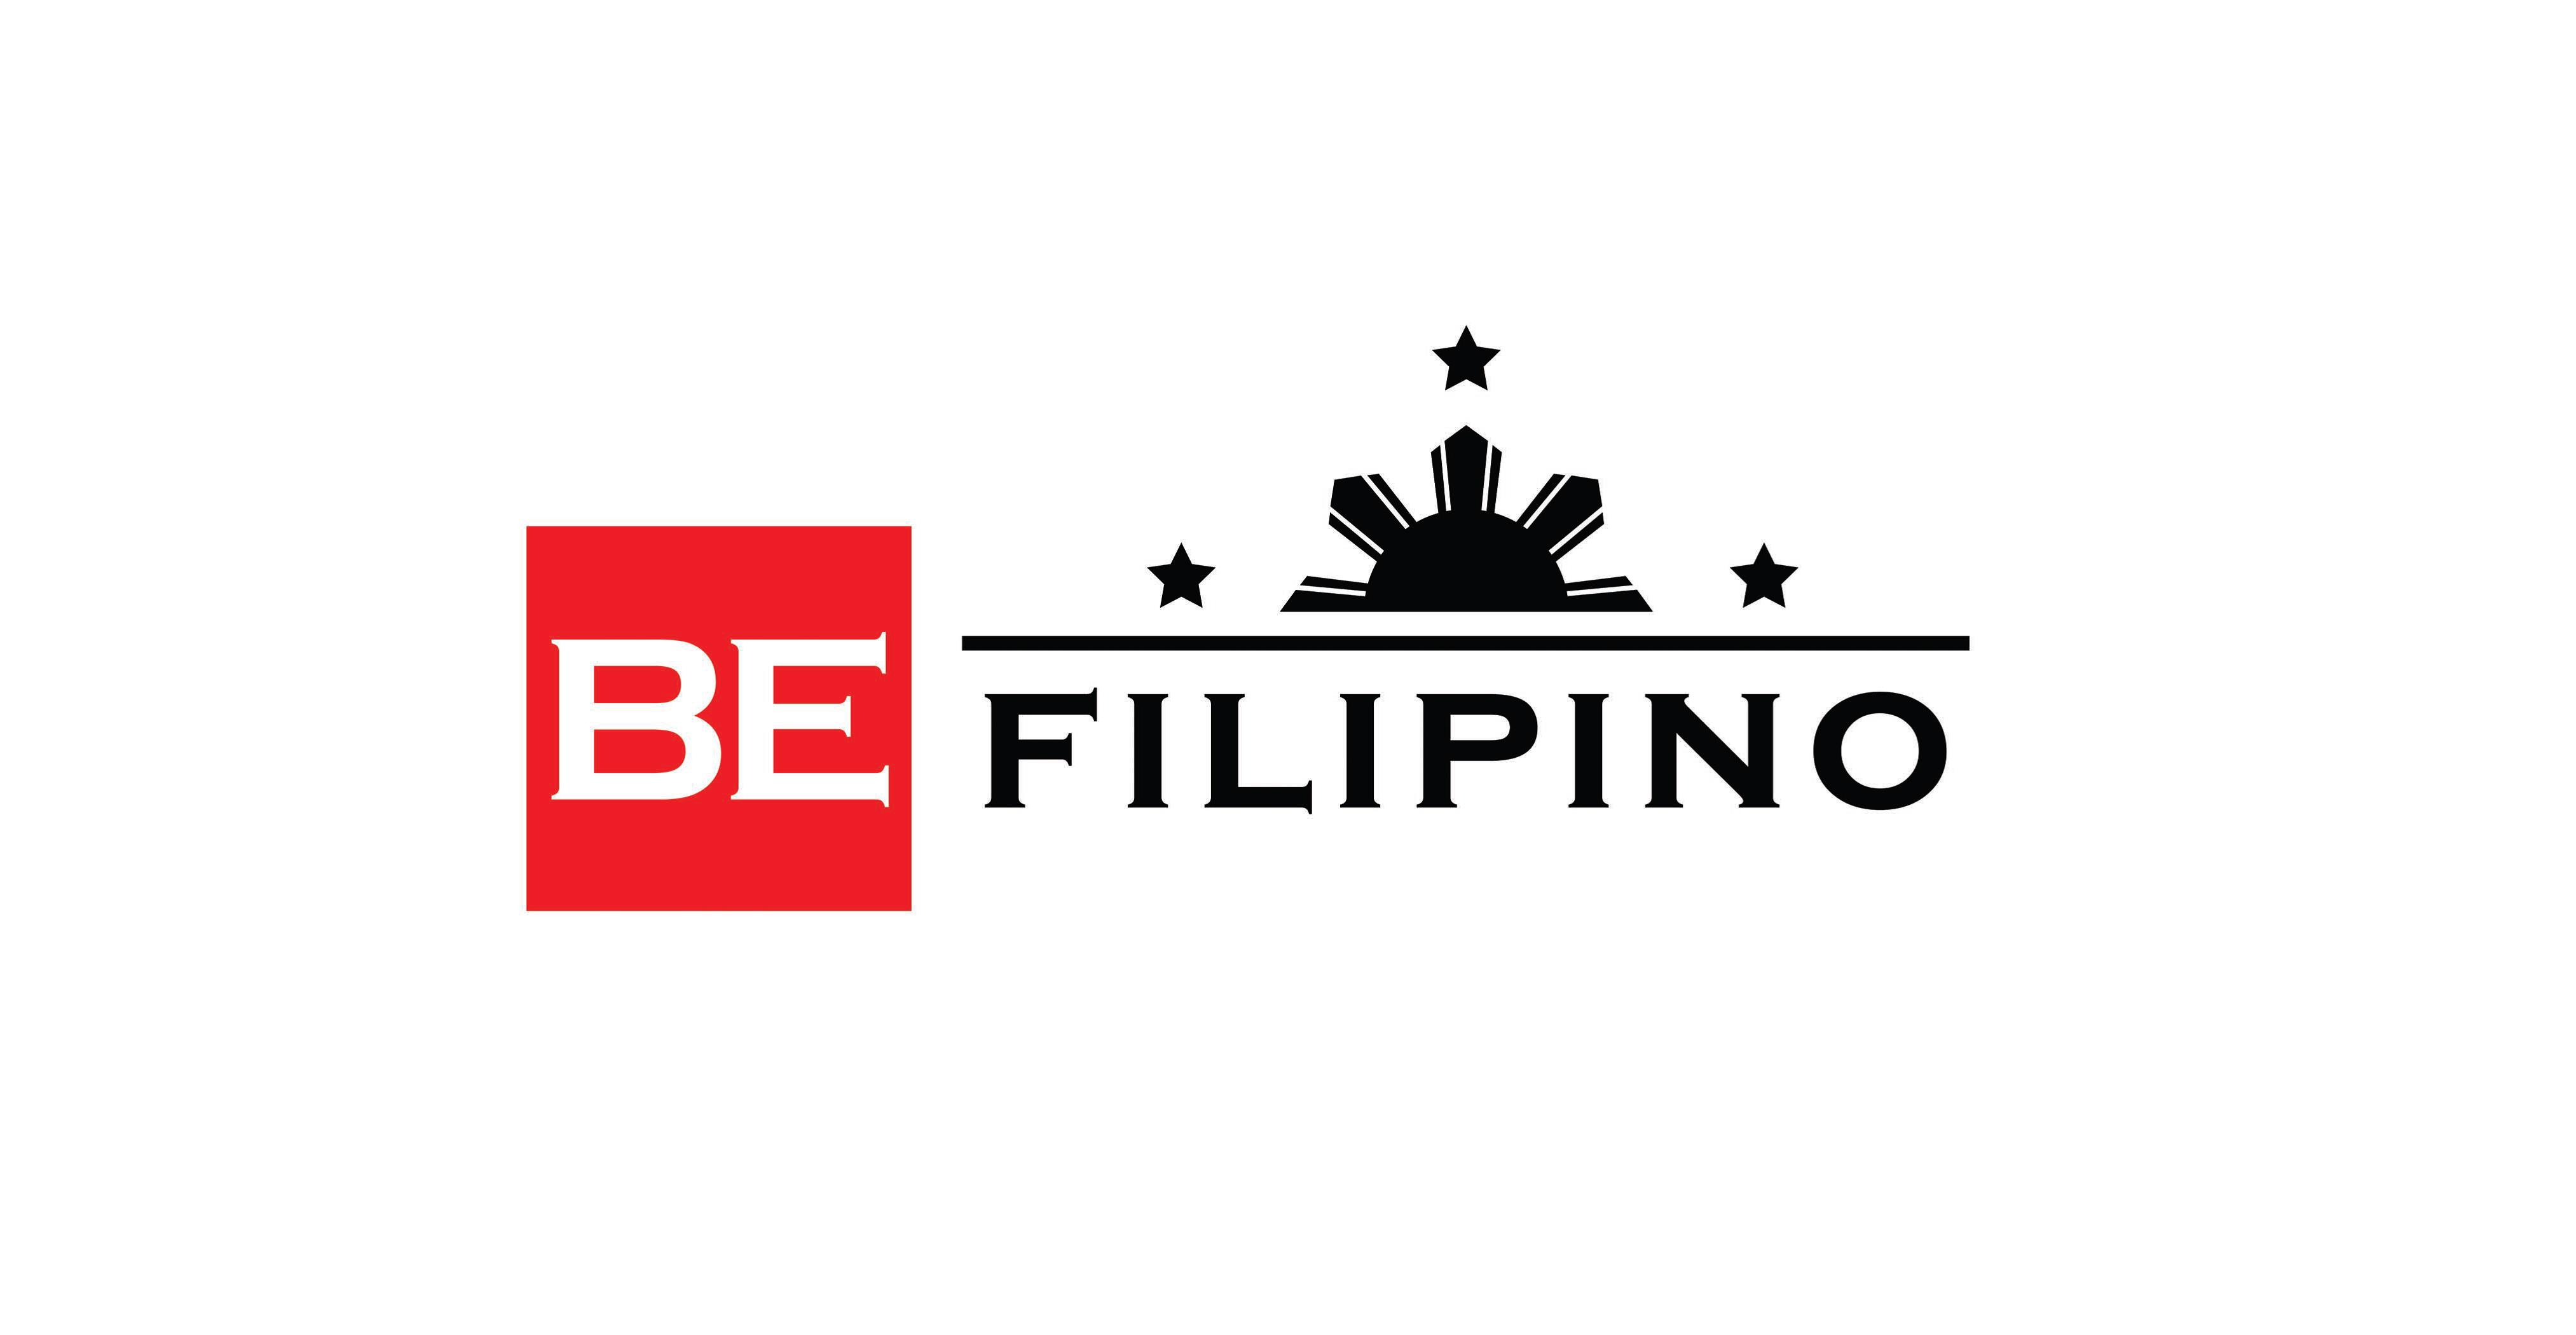 A FILIPINO ORGANIZATION